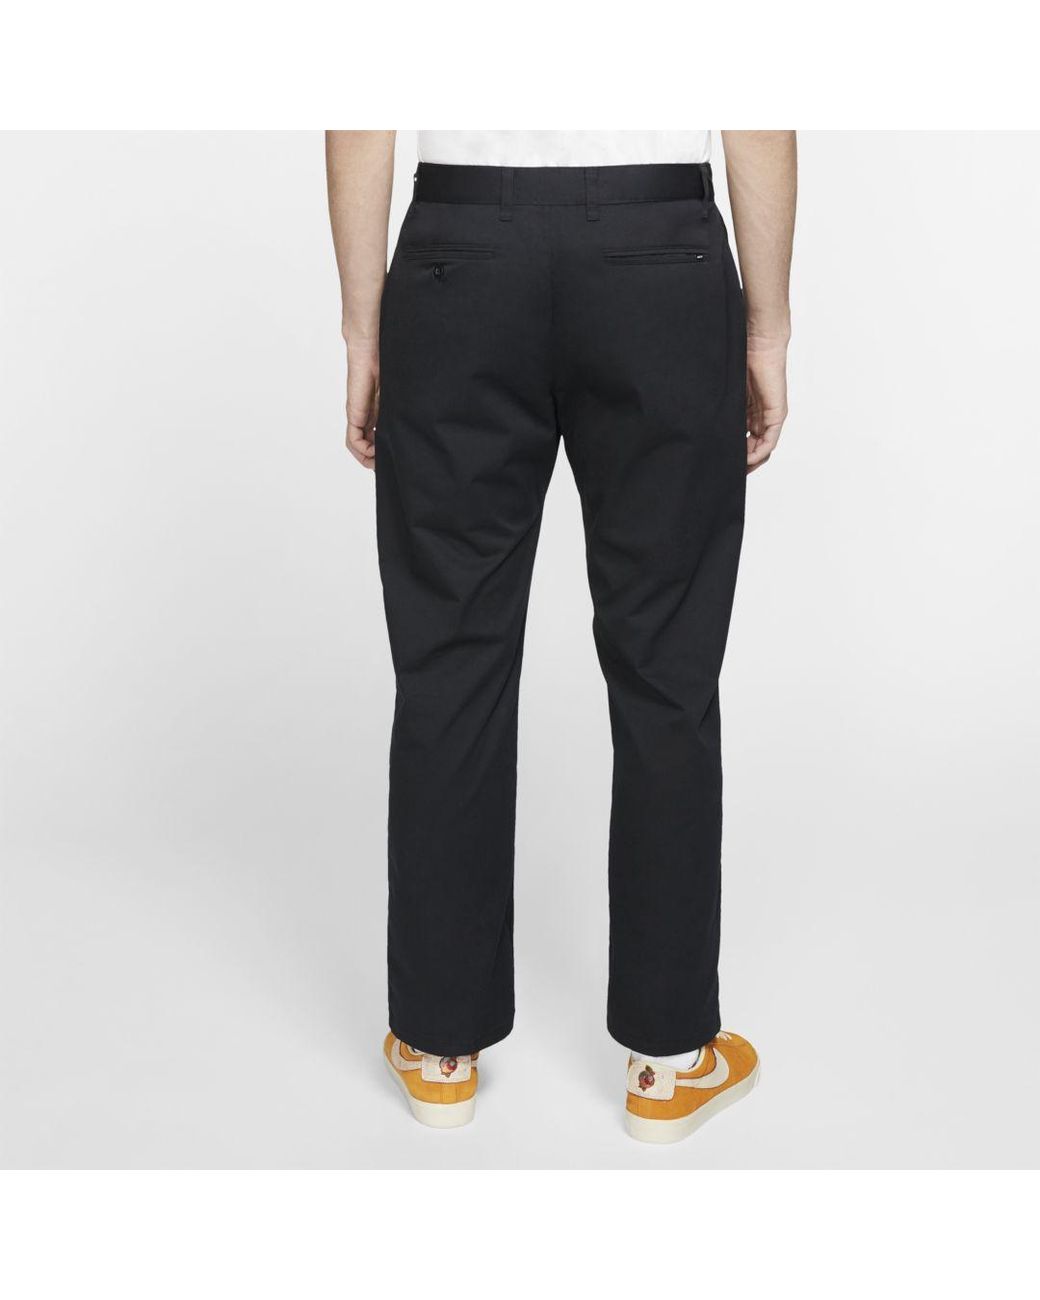 Nike Sb Dri-fit Ftm Loose Fit Pants in Black for Men | Lyst